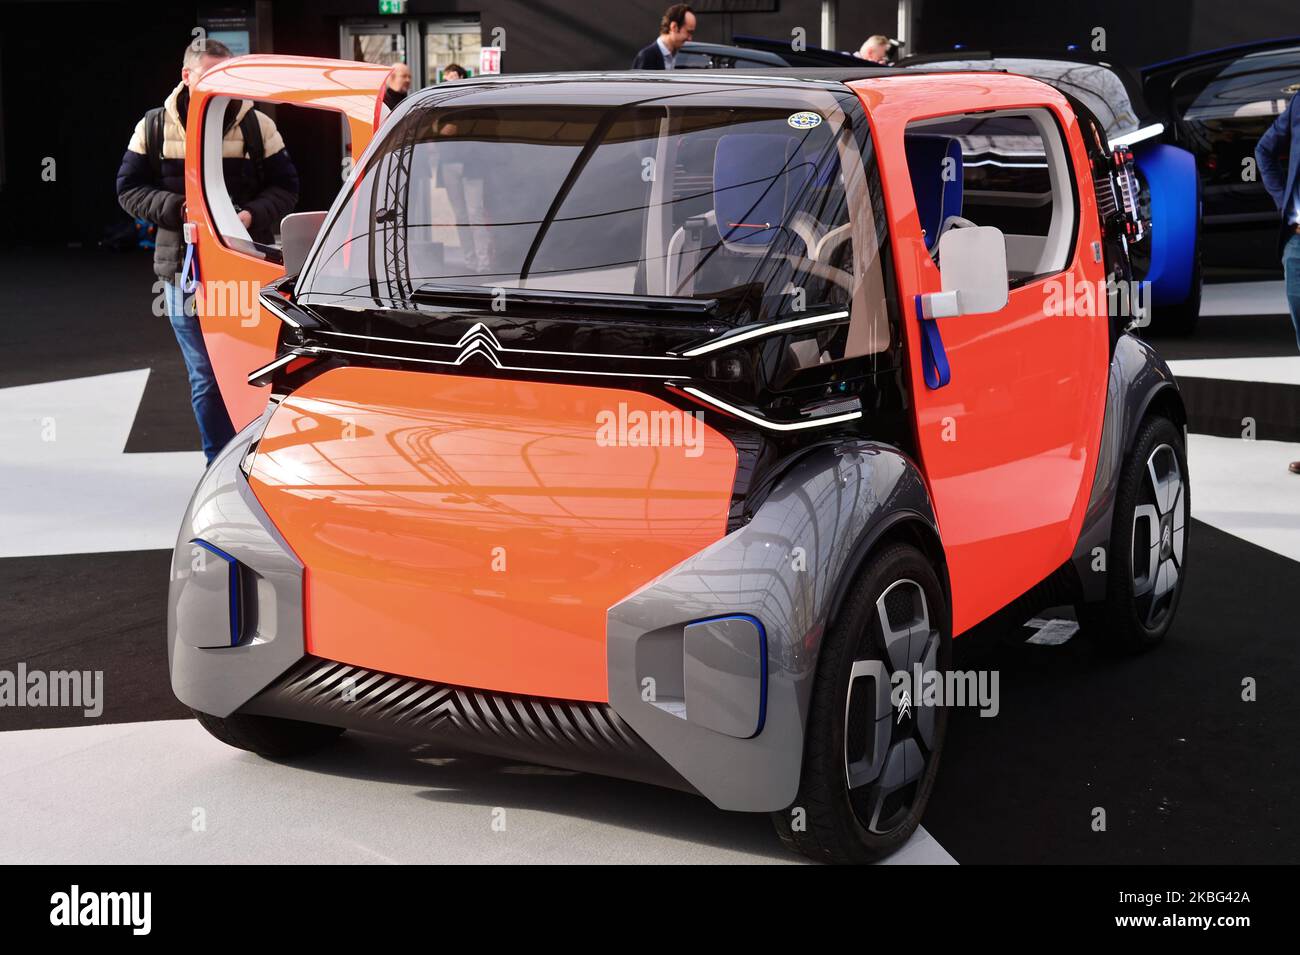 En images : Citroën AMI, la biplace 100 % électrique de 2020 - Challenges